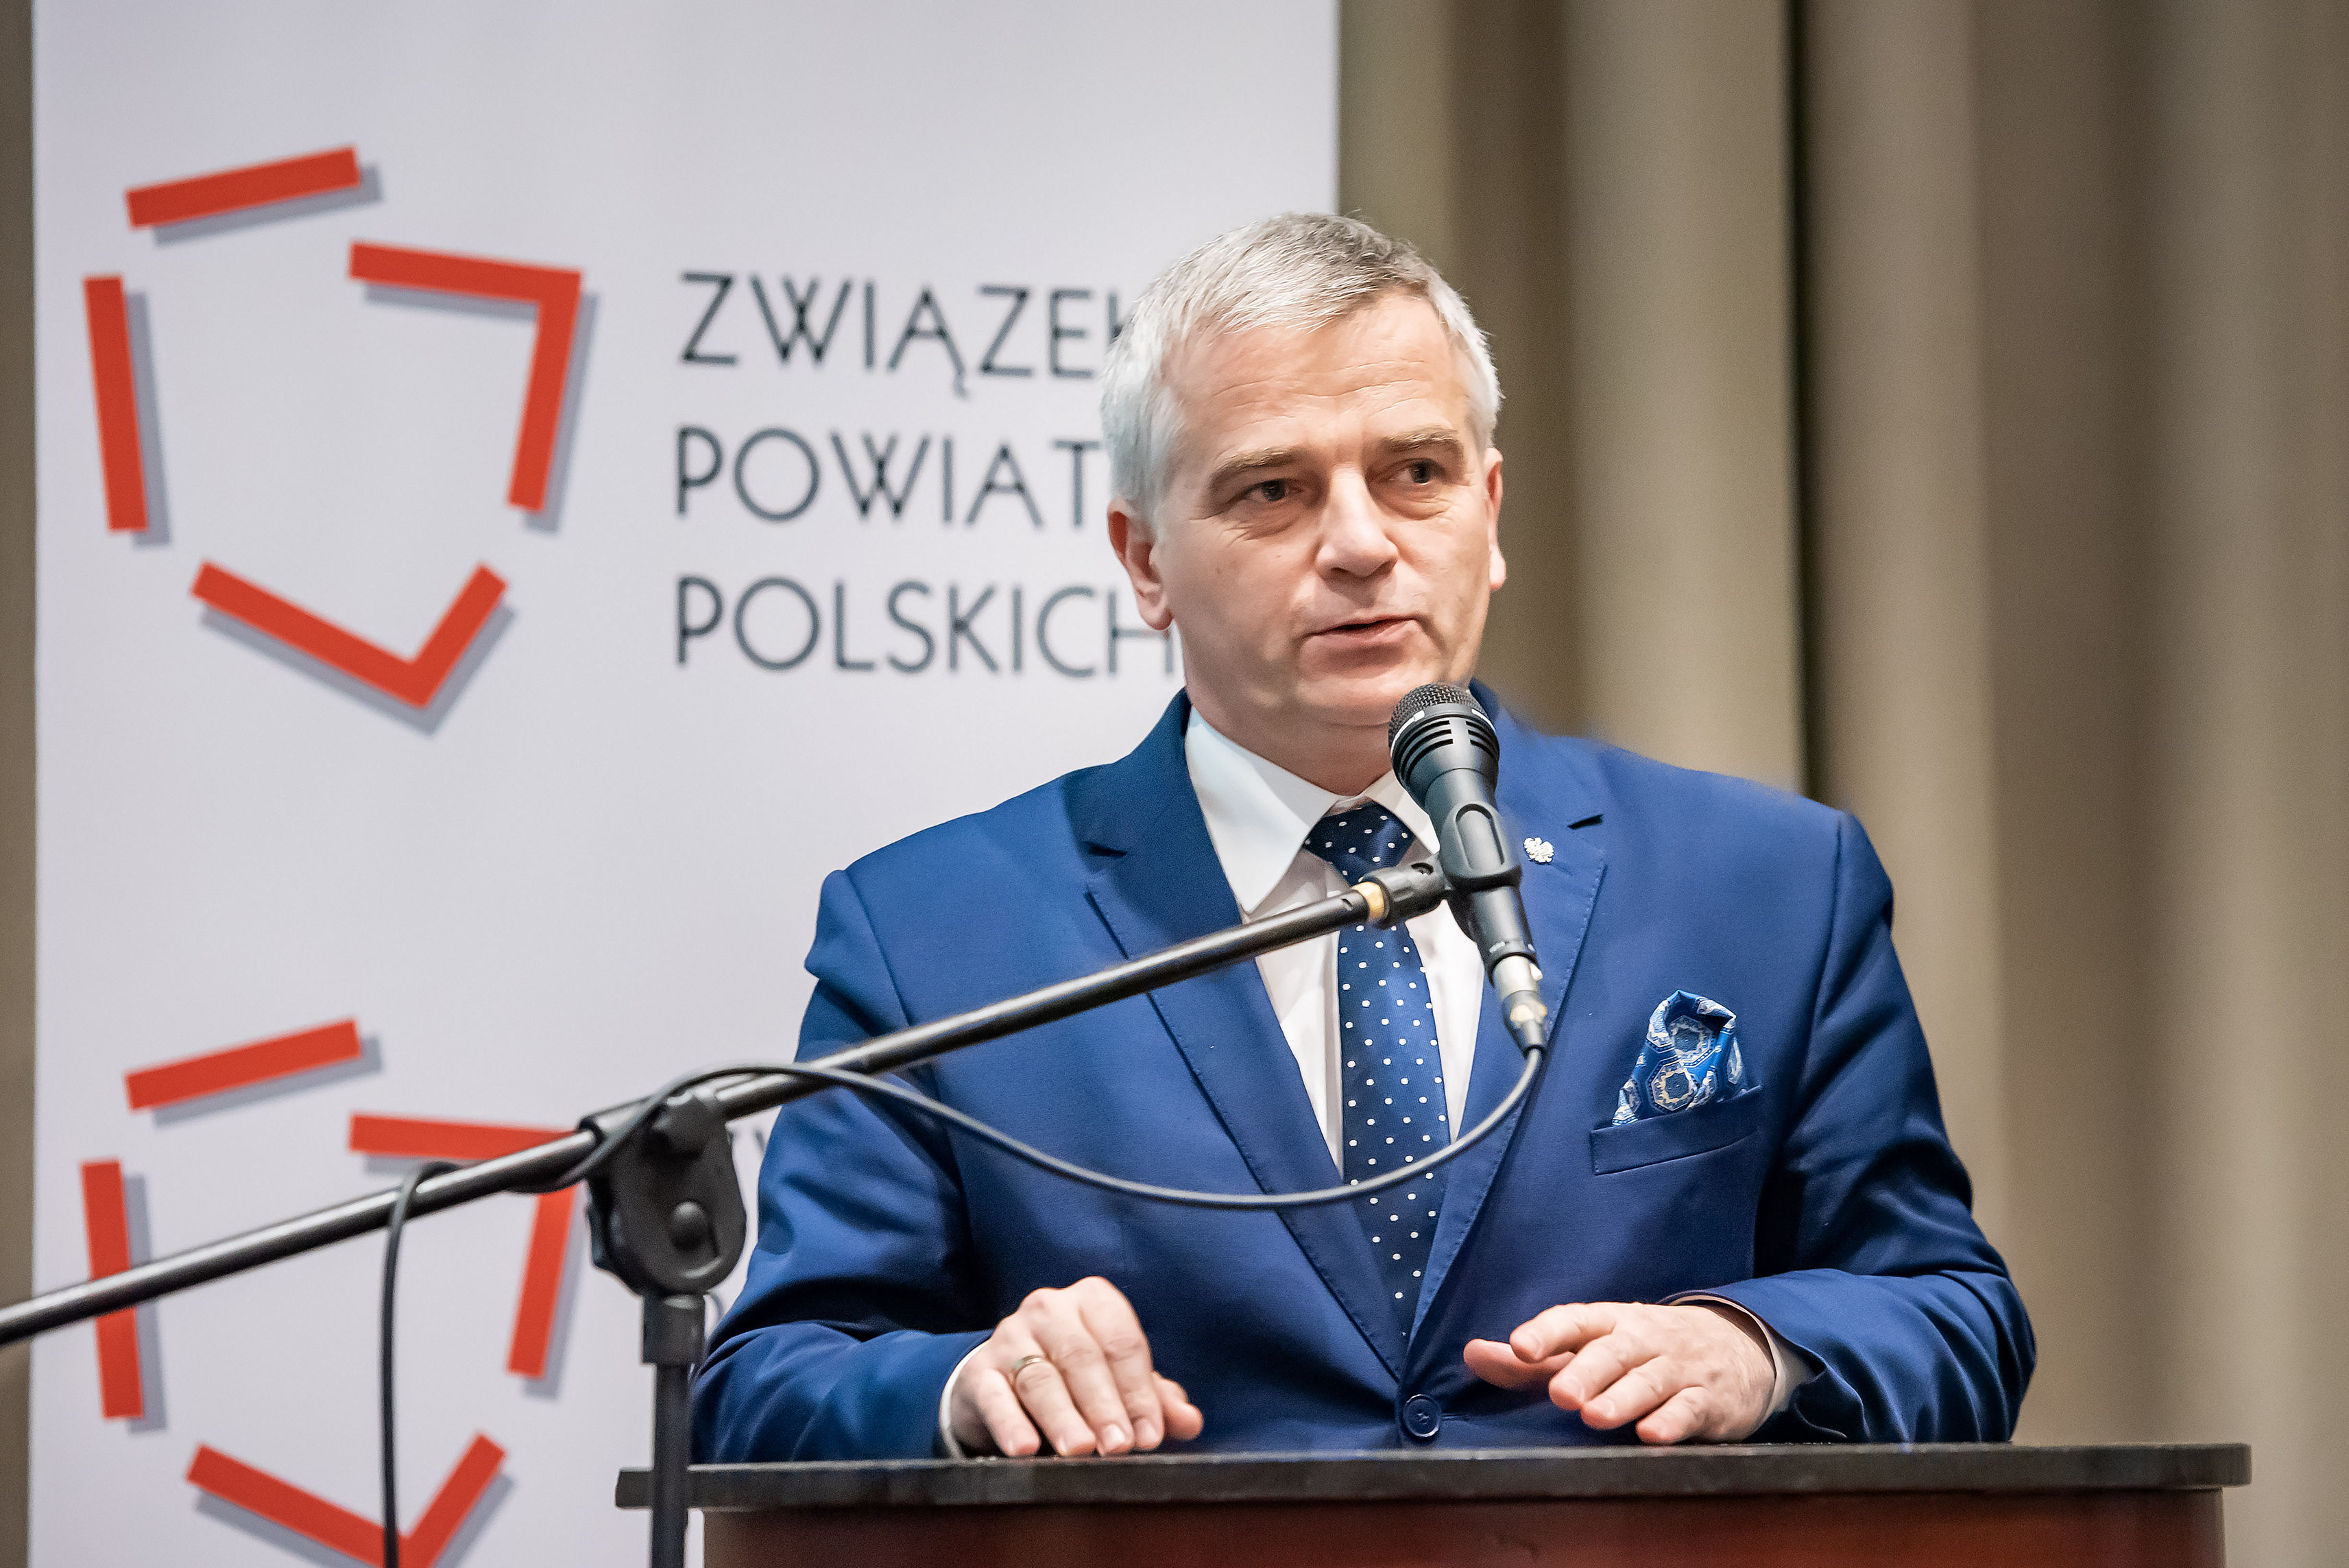 Przewodniczący Komisji Sejmowej Andrzej Maciejewski poczas XXIV Zgromadzenia Ogólnego ZPP